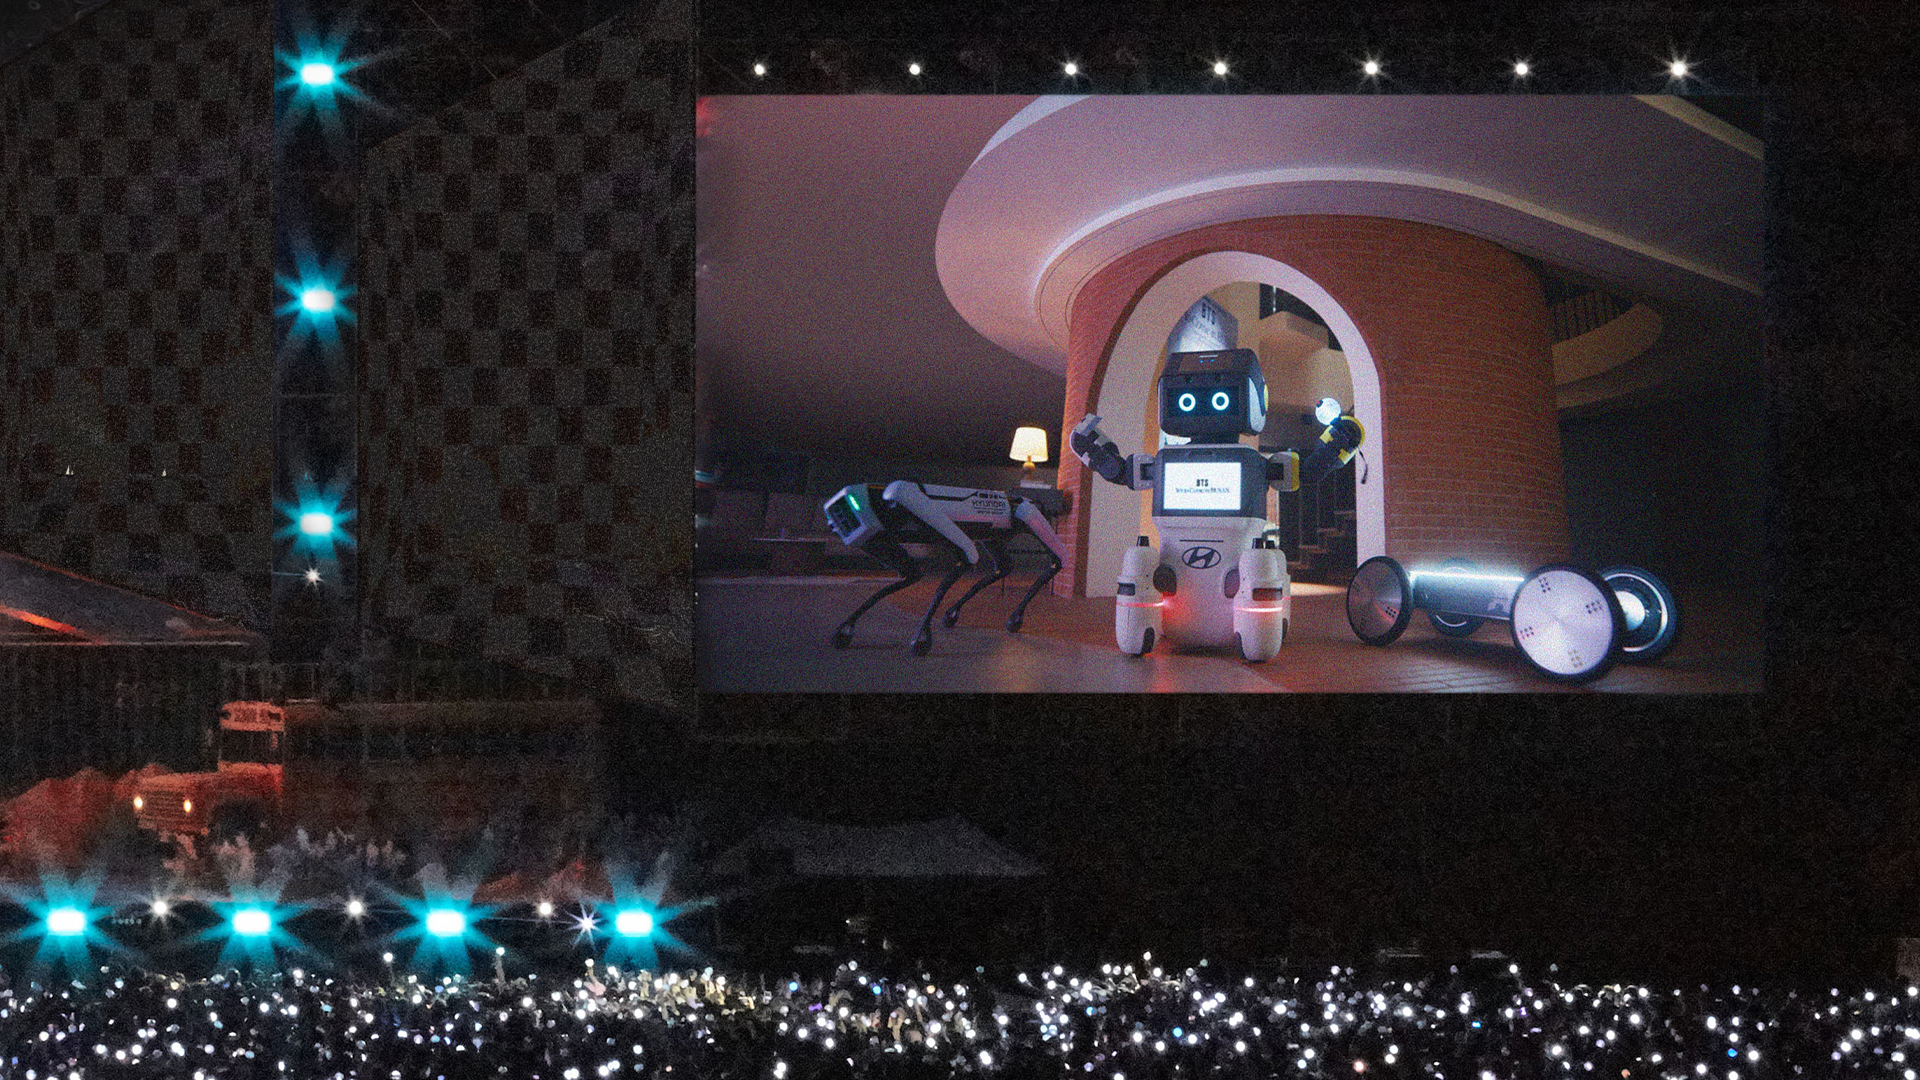 방탄소년단의 부산 콘서트에서 현대차그룹의 로봇들이 등장했다